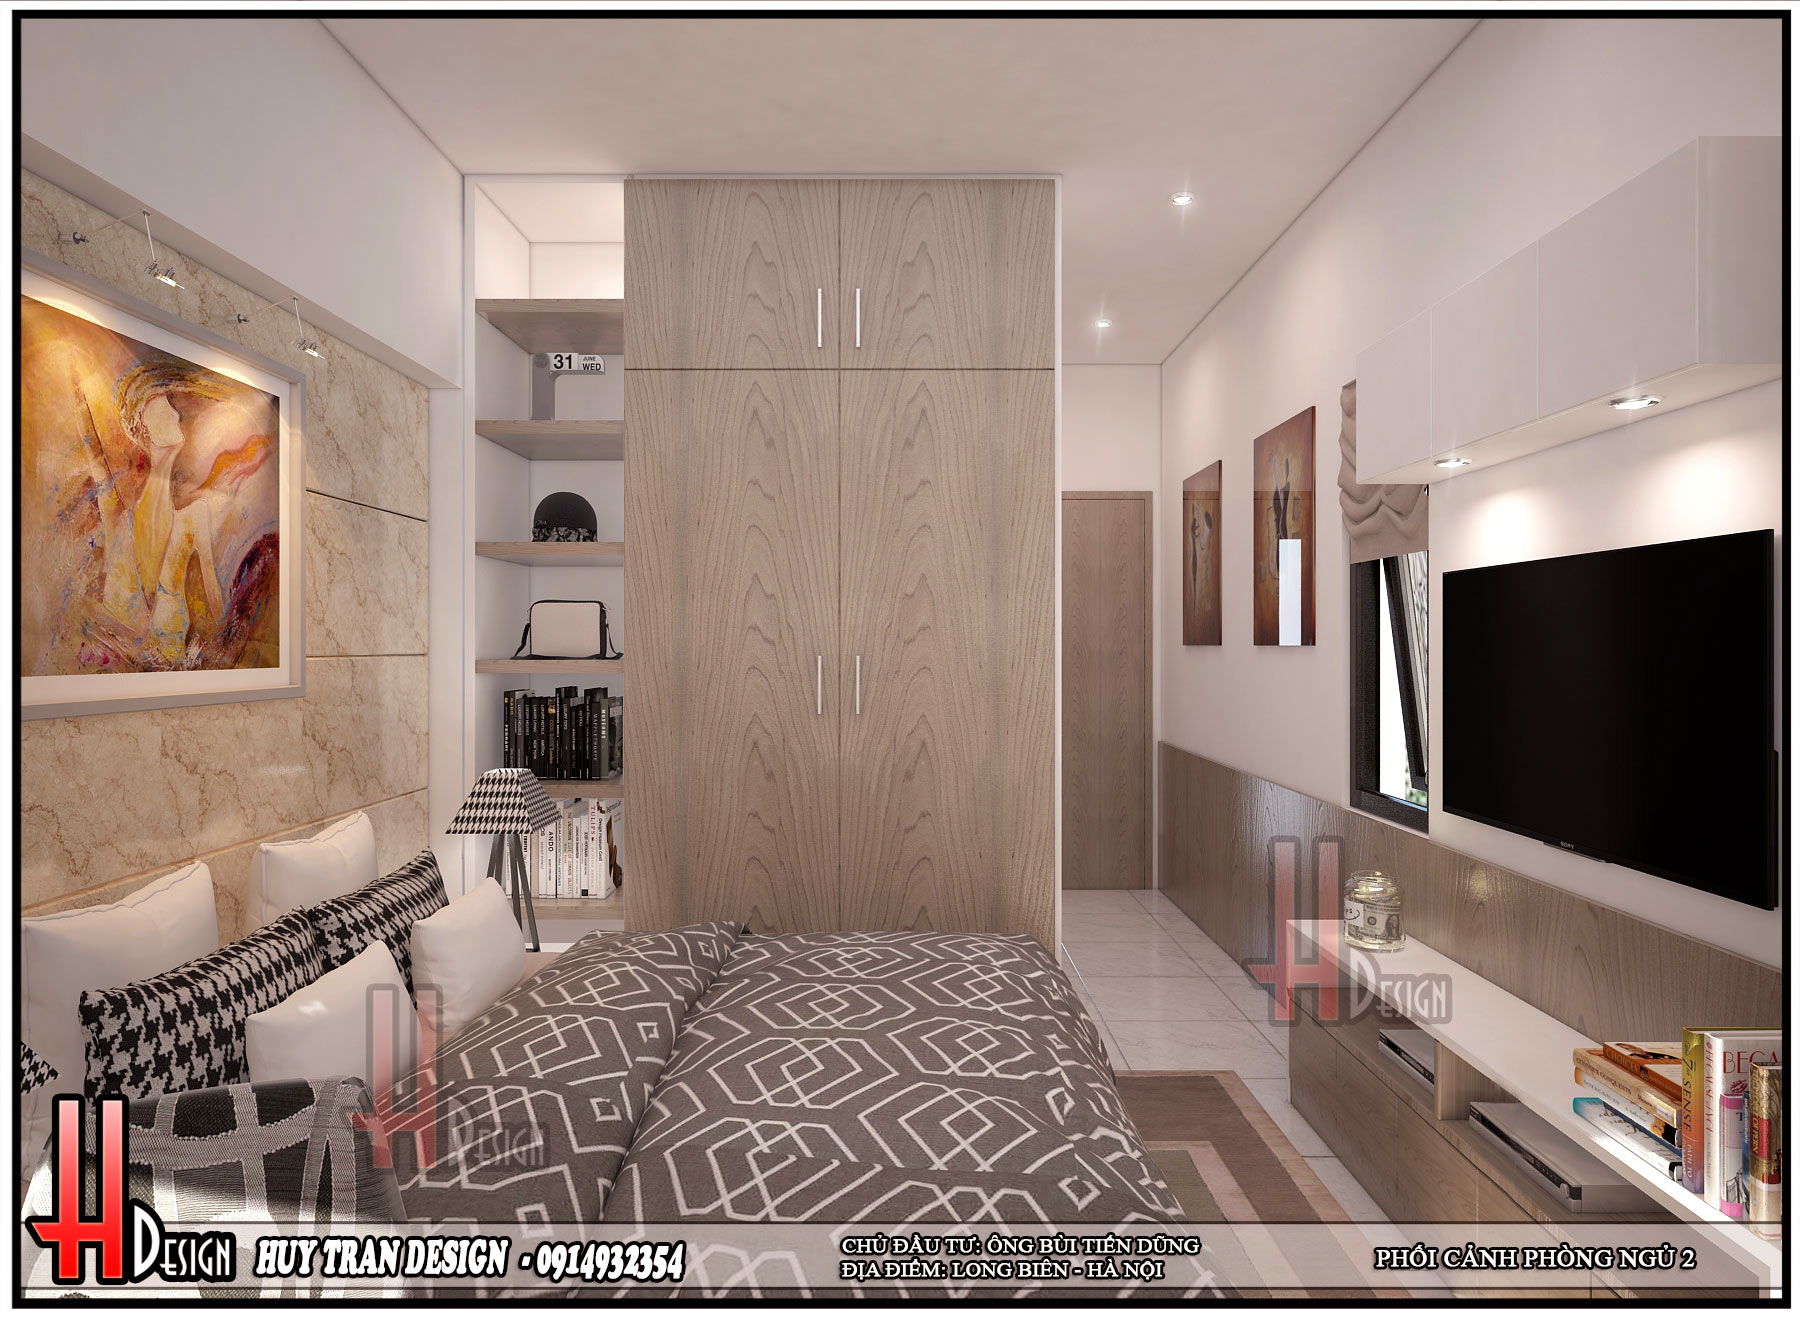 Thiết kế nội thất phòng ngủ nhà phố 4 tầng hiện đại - Huytrandesign